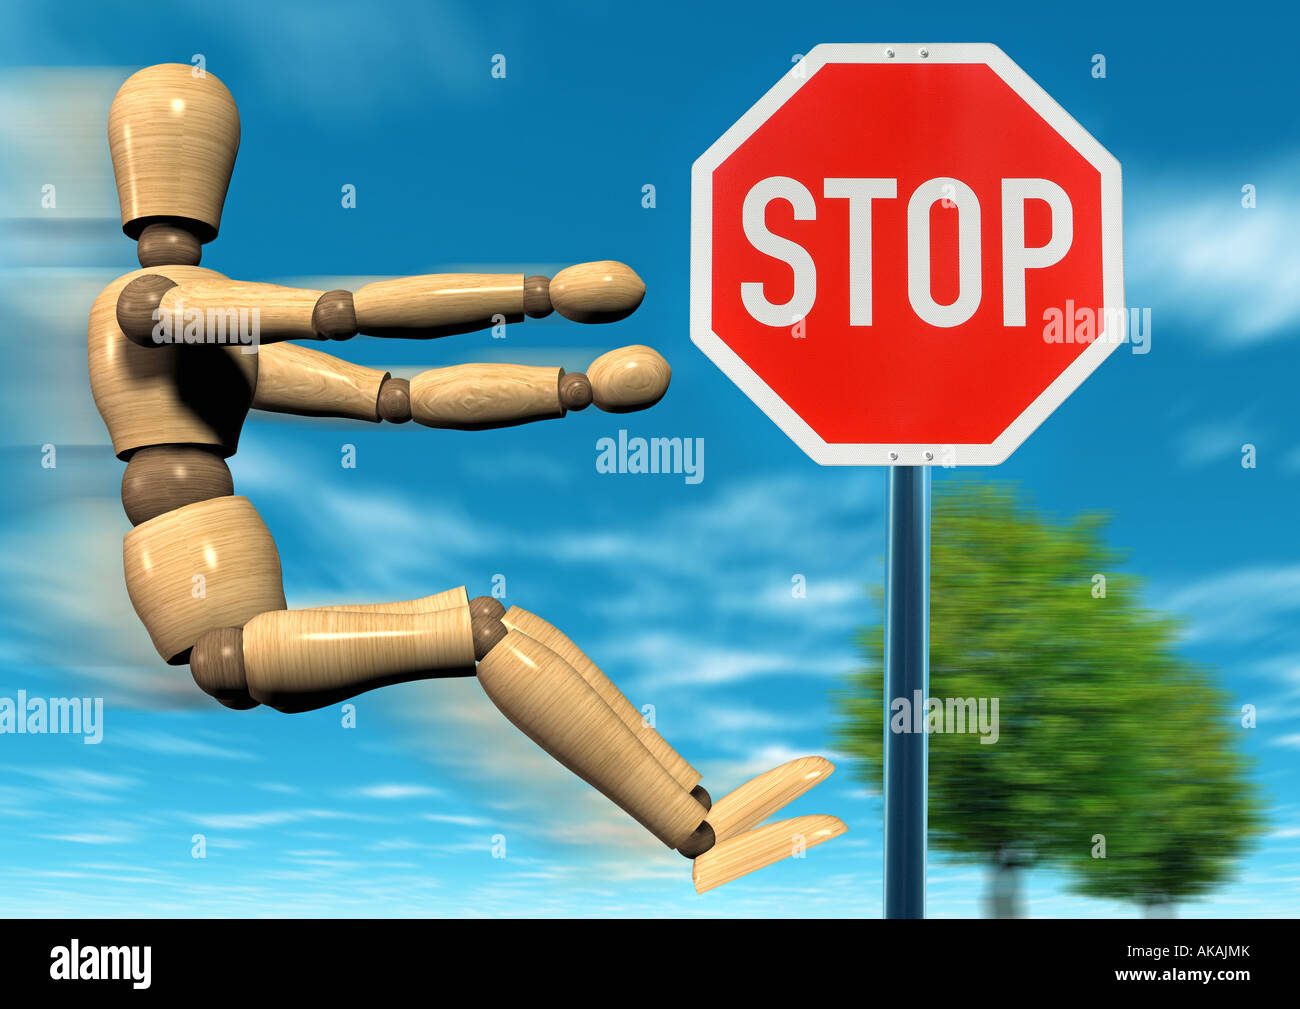 https://c8.alamy.com/comp/AKAJMK/stop-sign-stoppschild-vor-blauem-wolkenhimmel-AKAJMK.jpg